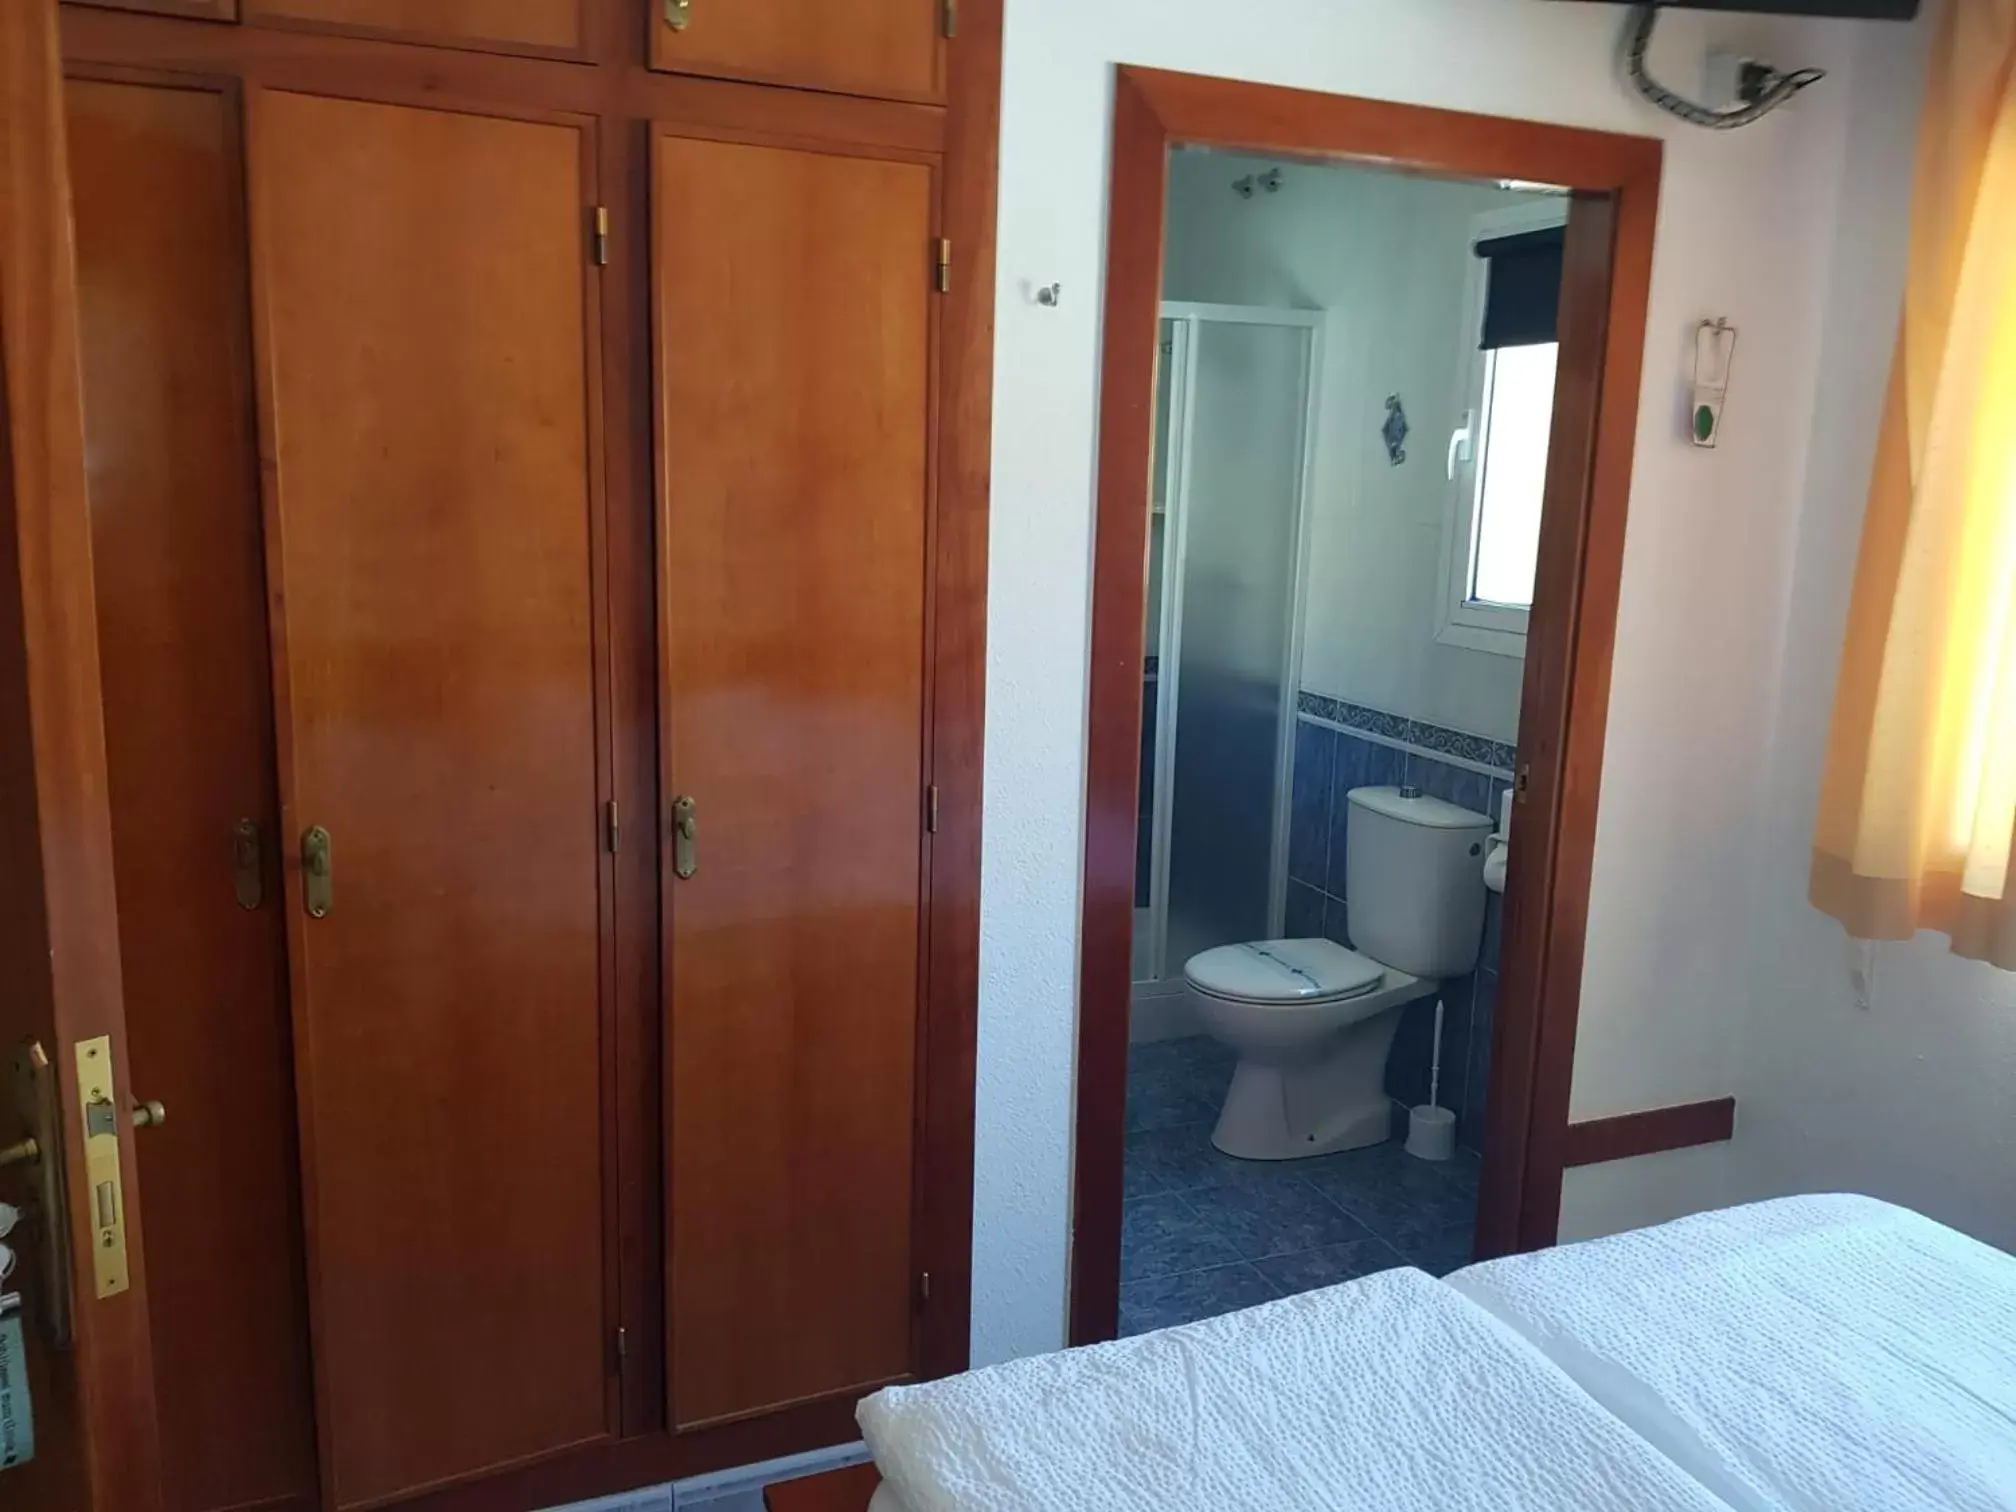 Bedroom, Bathroom in Hotel Montemar